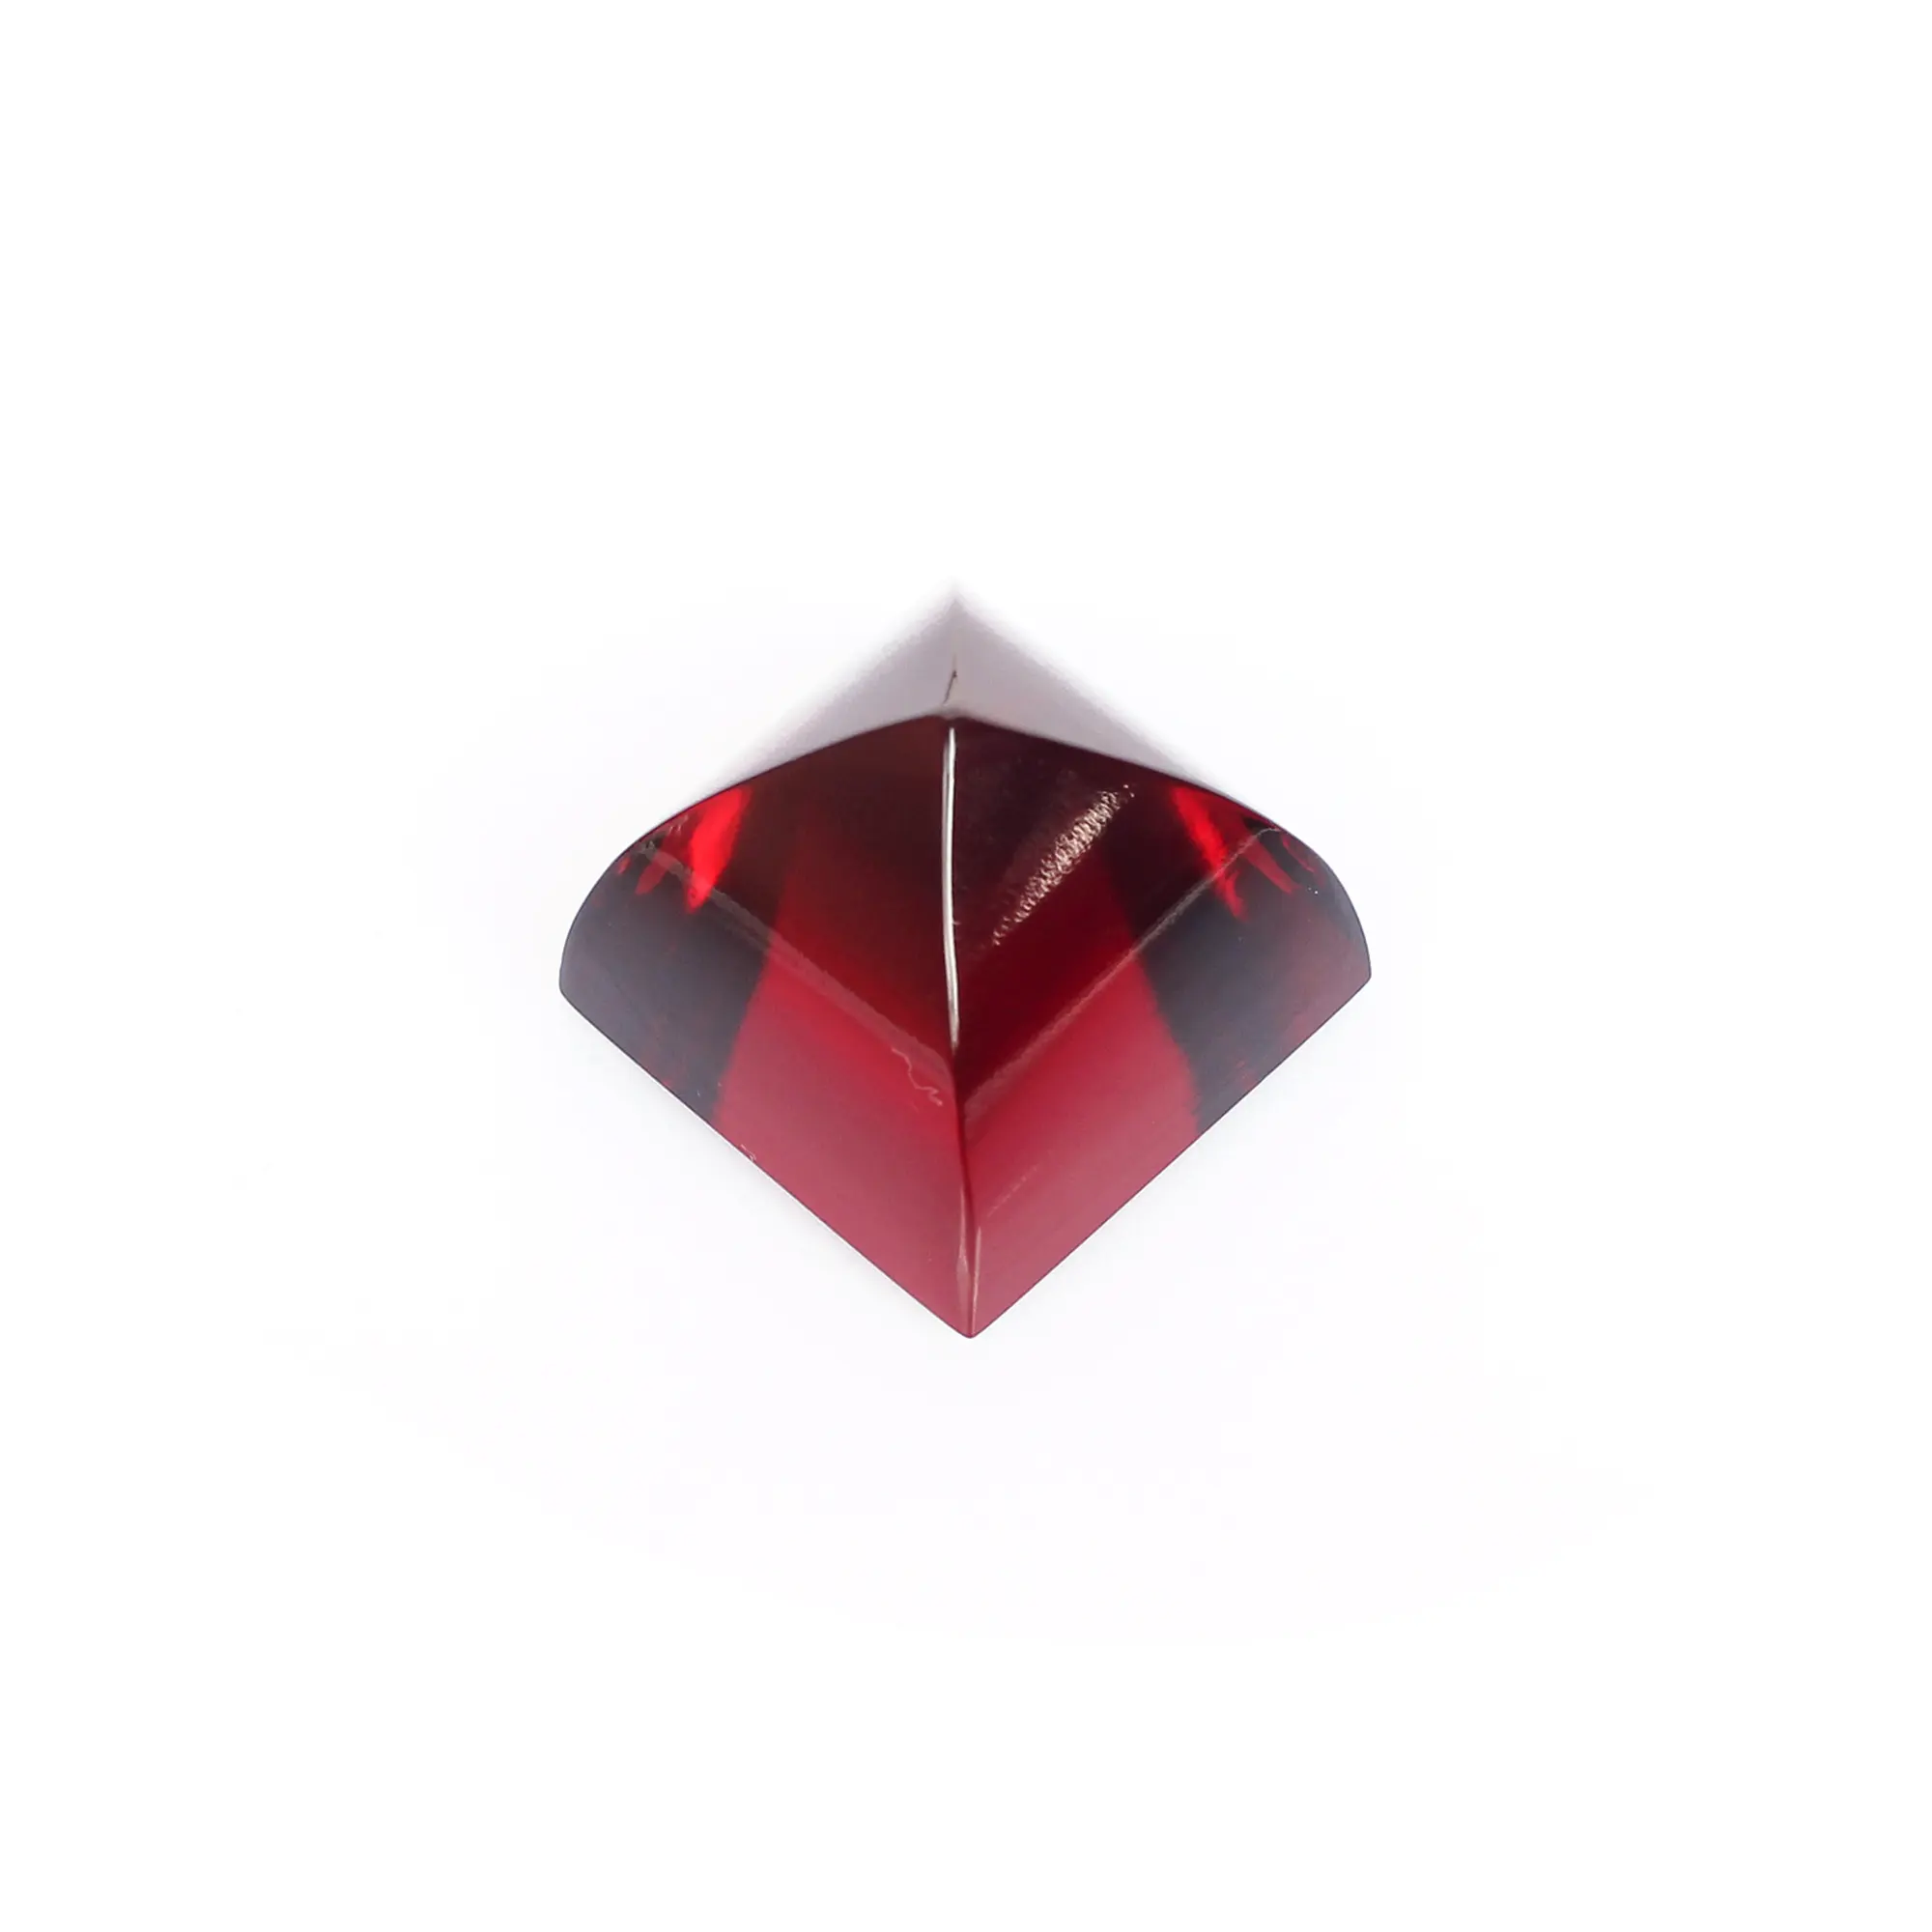 Garnet Hydro 18x15mm bentuk piramida 44.00 batu permata Cts untuk membuat perhiasan